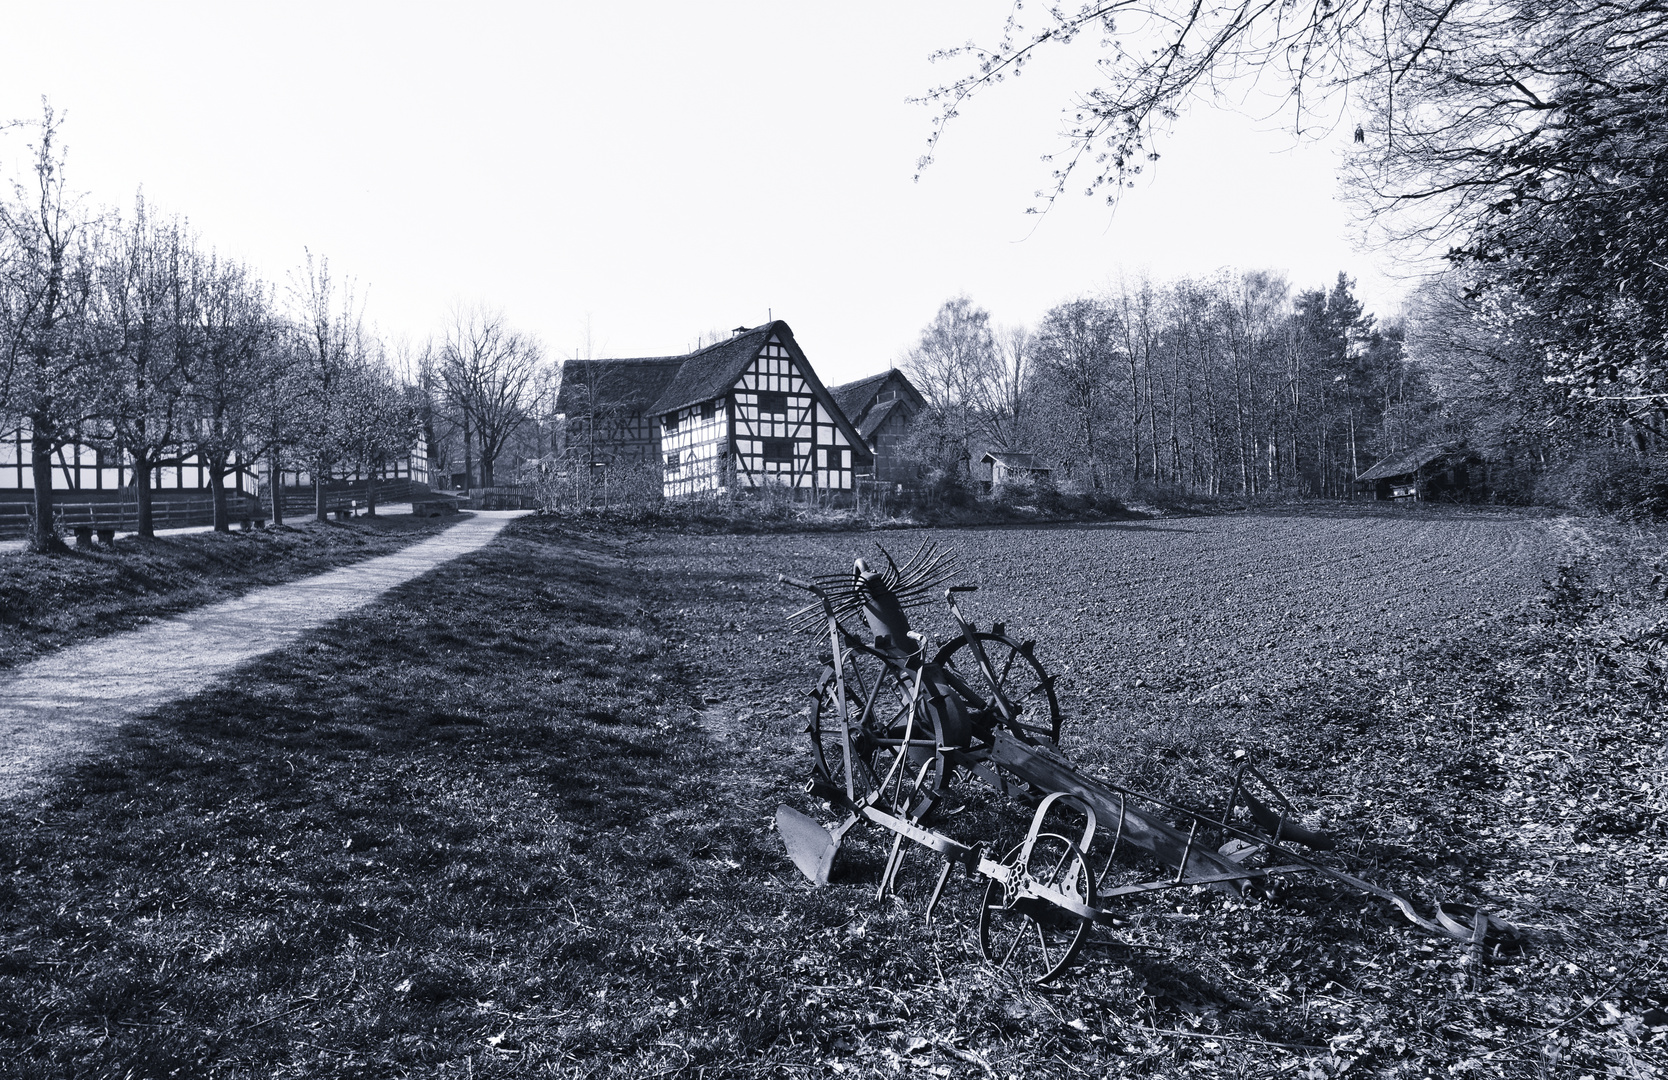 LVR Kommern (90) alter Westerwälder Bauernhof